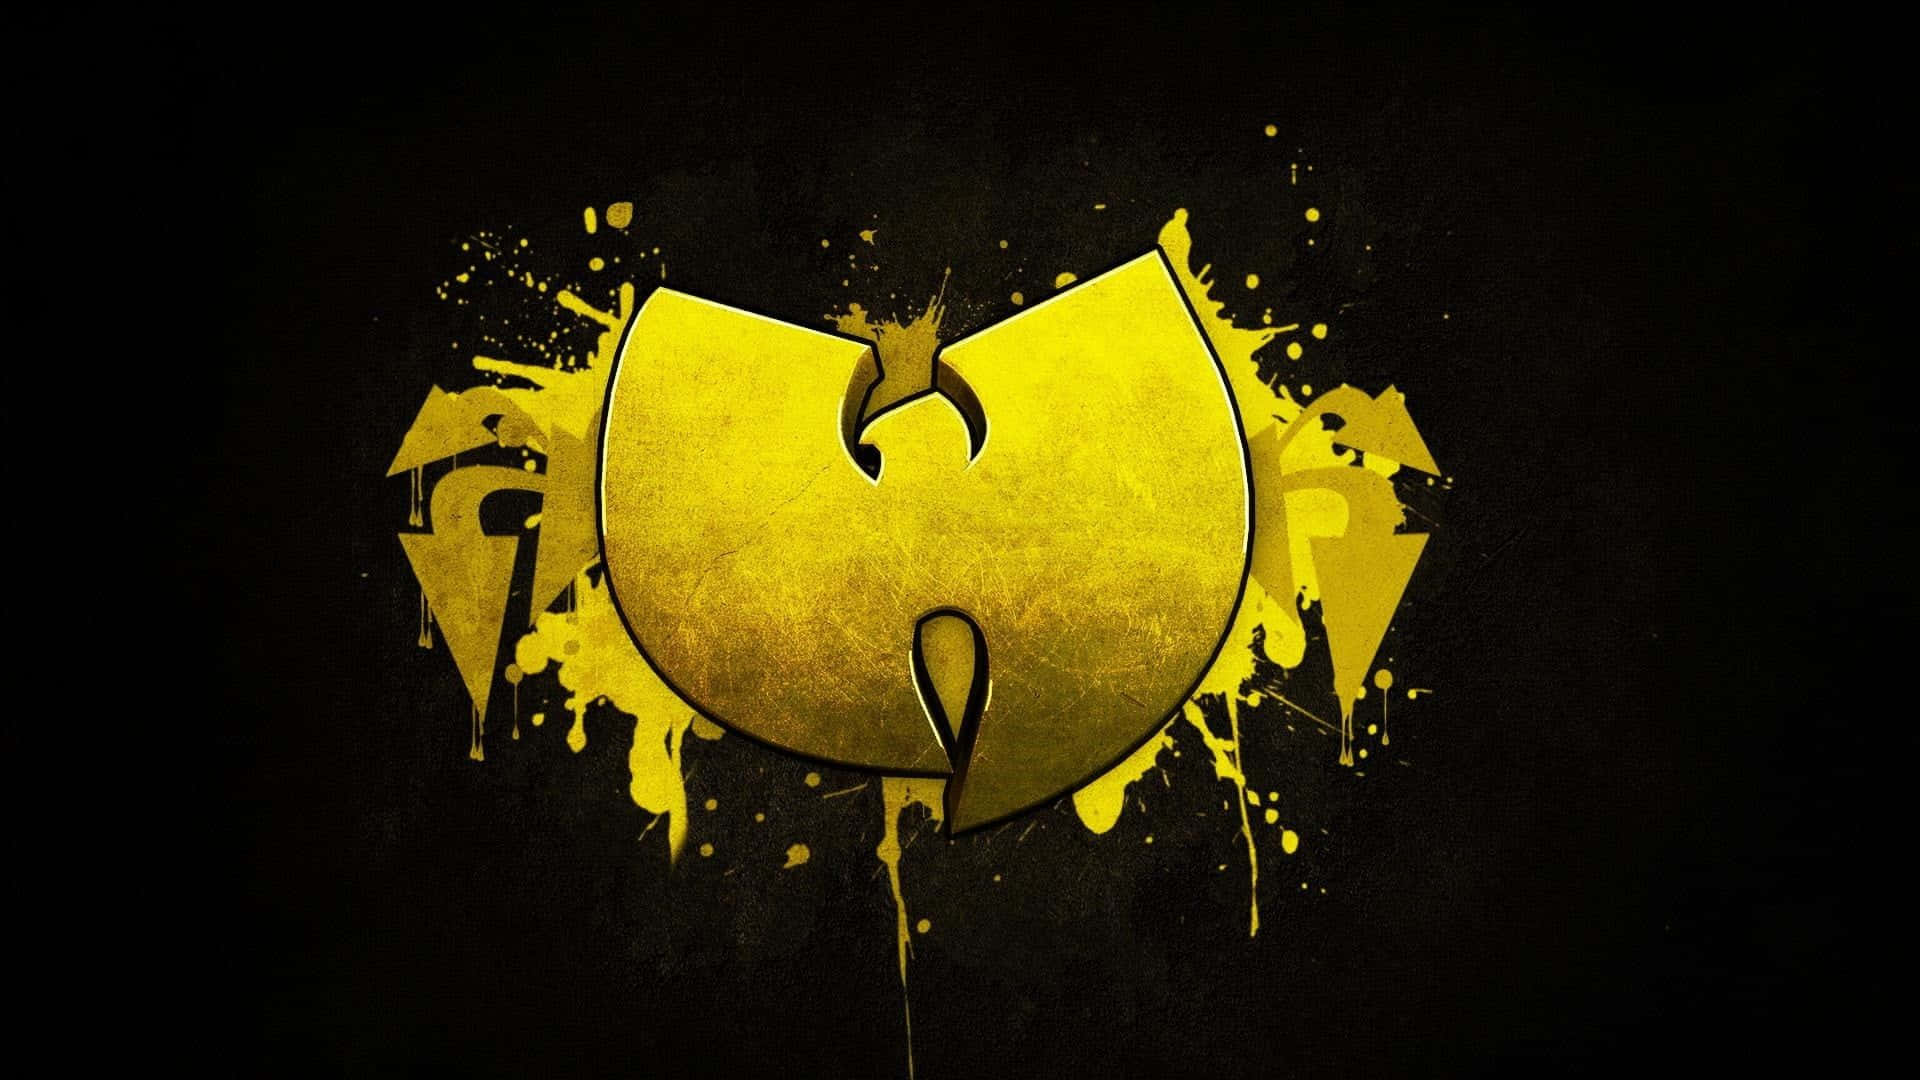 Wu Tang Clan Logo Wallpaper